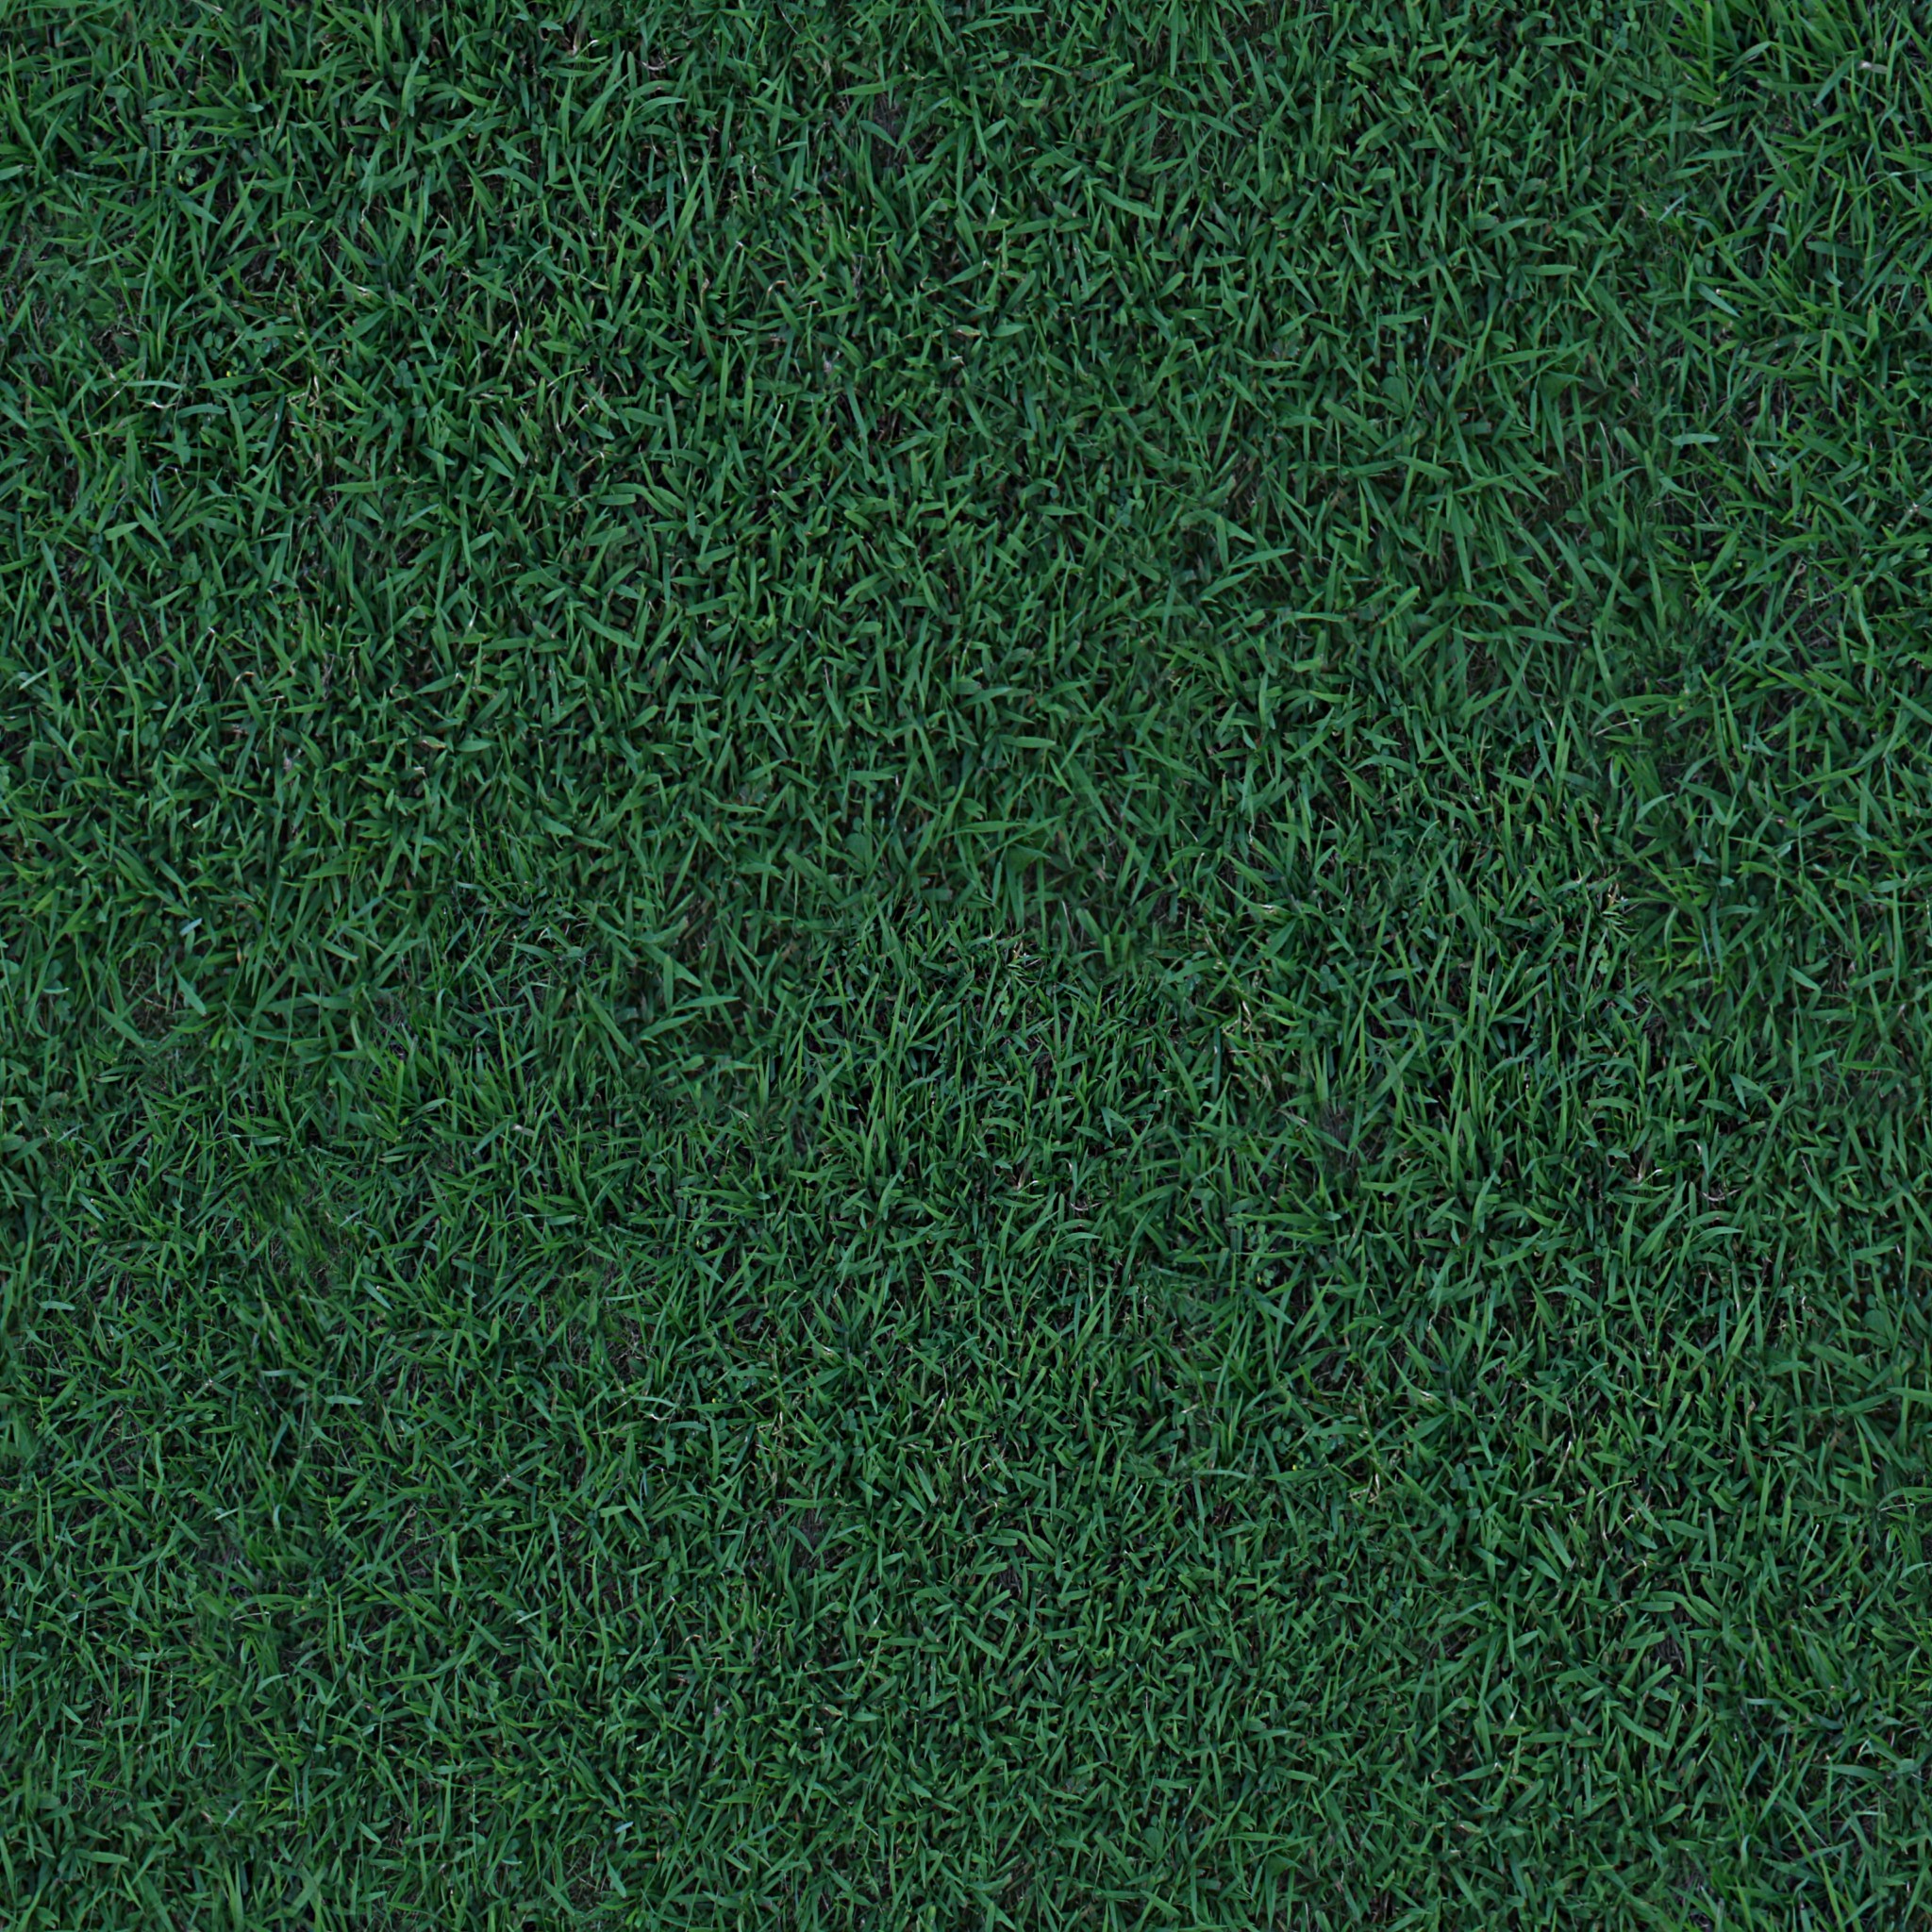 3d grass texture hd